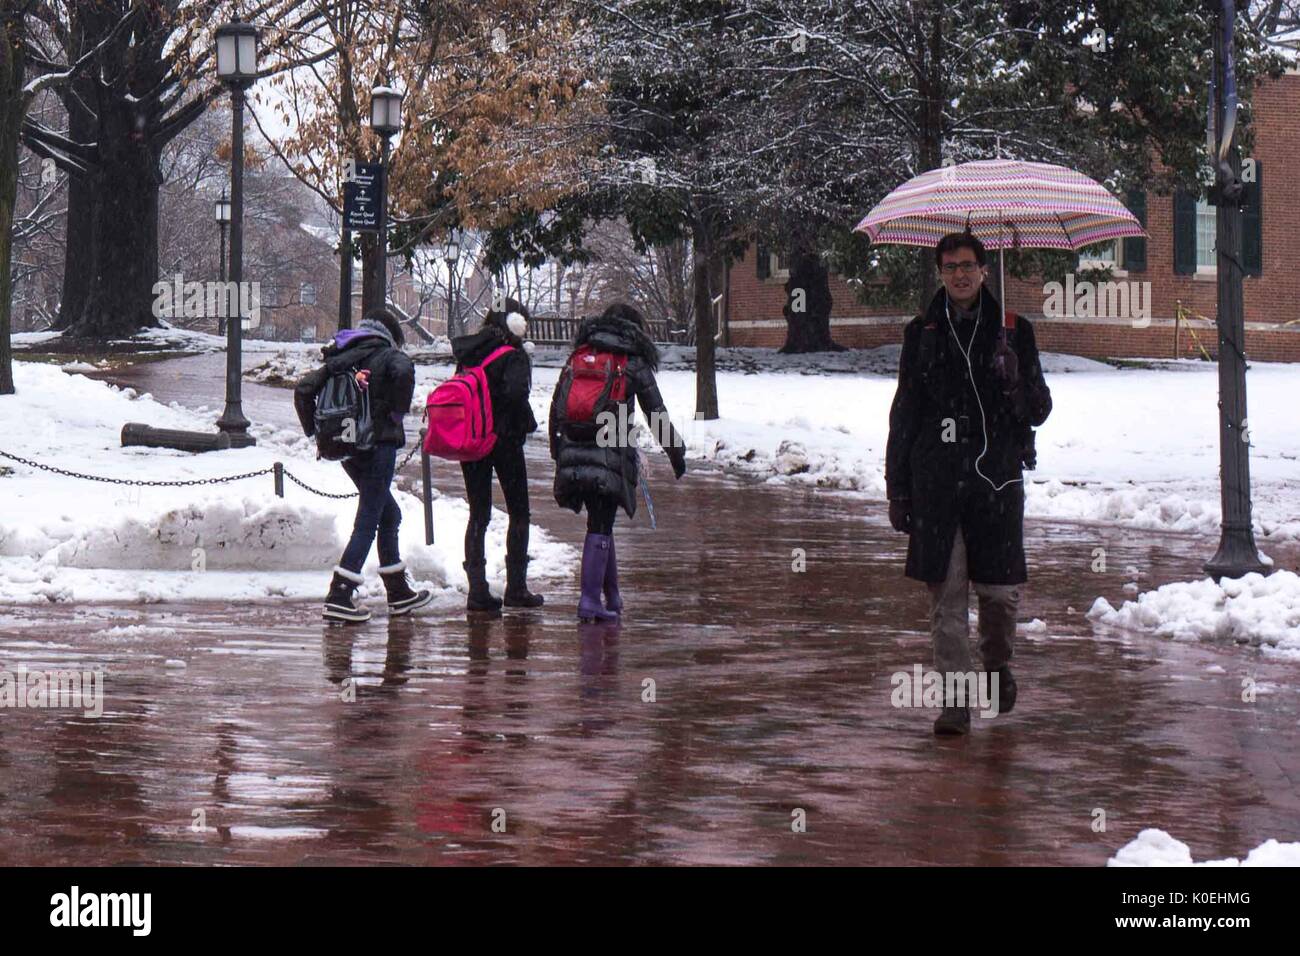 Ein Student mit einem Regenschirm geht in Richtung Kamera, während drei Studentinnen in warmer Kleidung und Schneestiefeln hinter ihm in die entgegengesetzte Richtung laufen, während es regnet und mehrere Zentimeter Schnee den Boden bedecken. Das Hotel liegt zwischen dem Freshman Quad und Keyser Quad an der Johns Hopkins University, Baltimore, Maryland, 10. Dezember 2013. Mit Freundlicher Genehmigung Von Eric Chen. Stockfoto